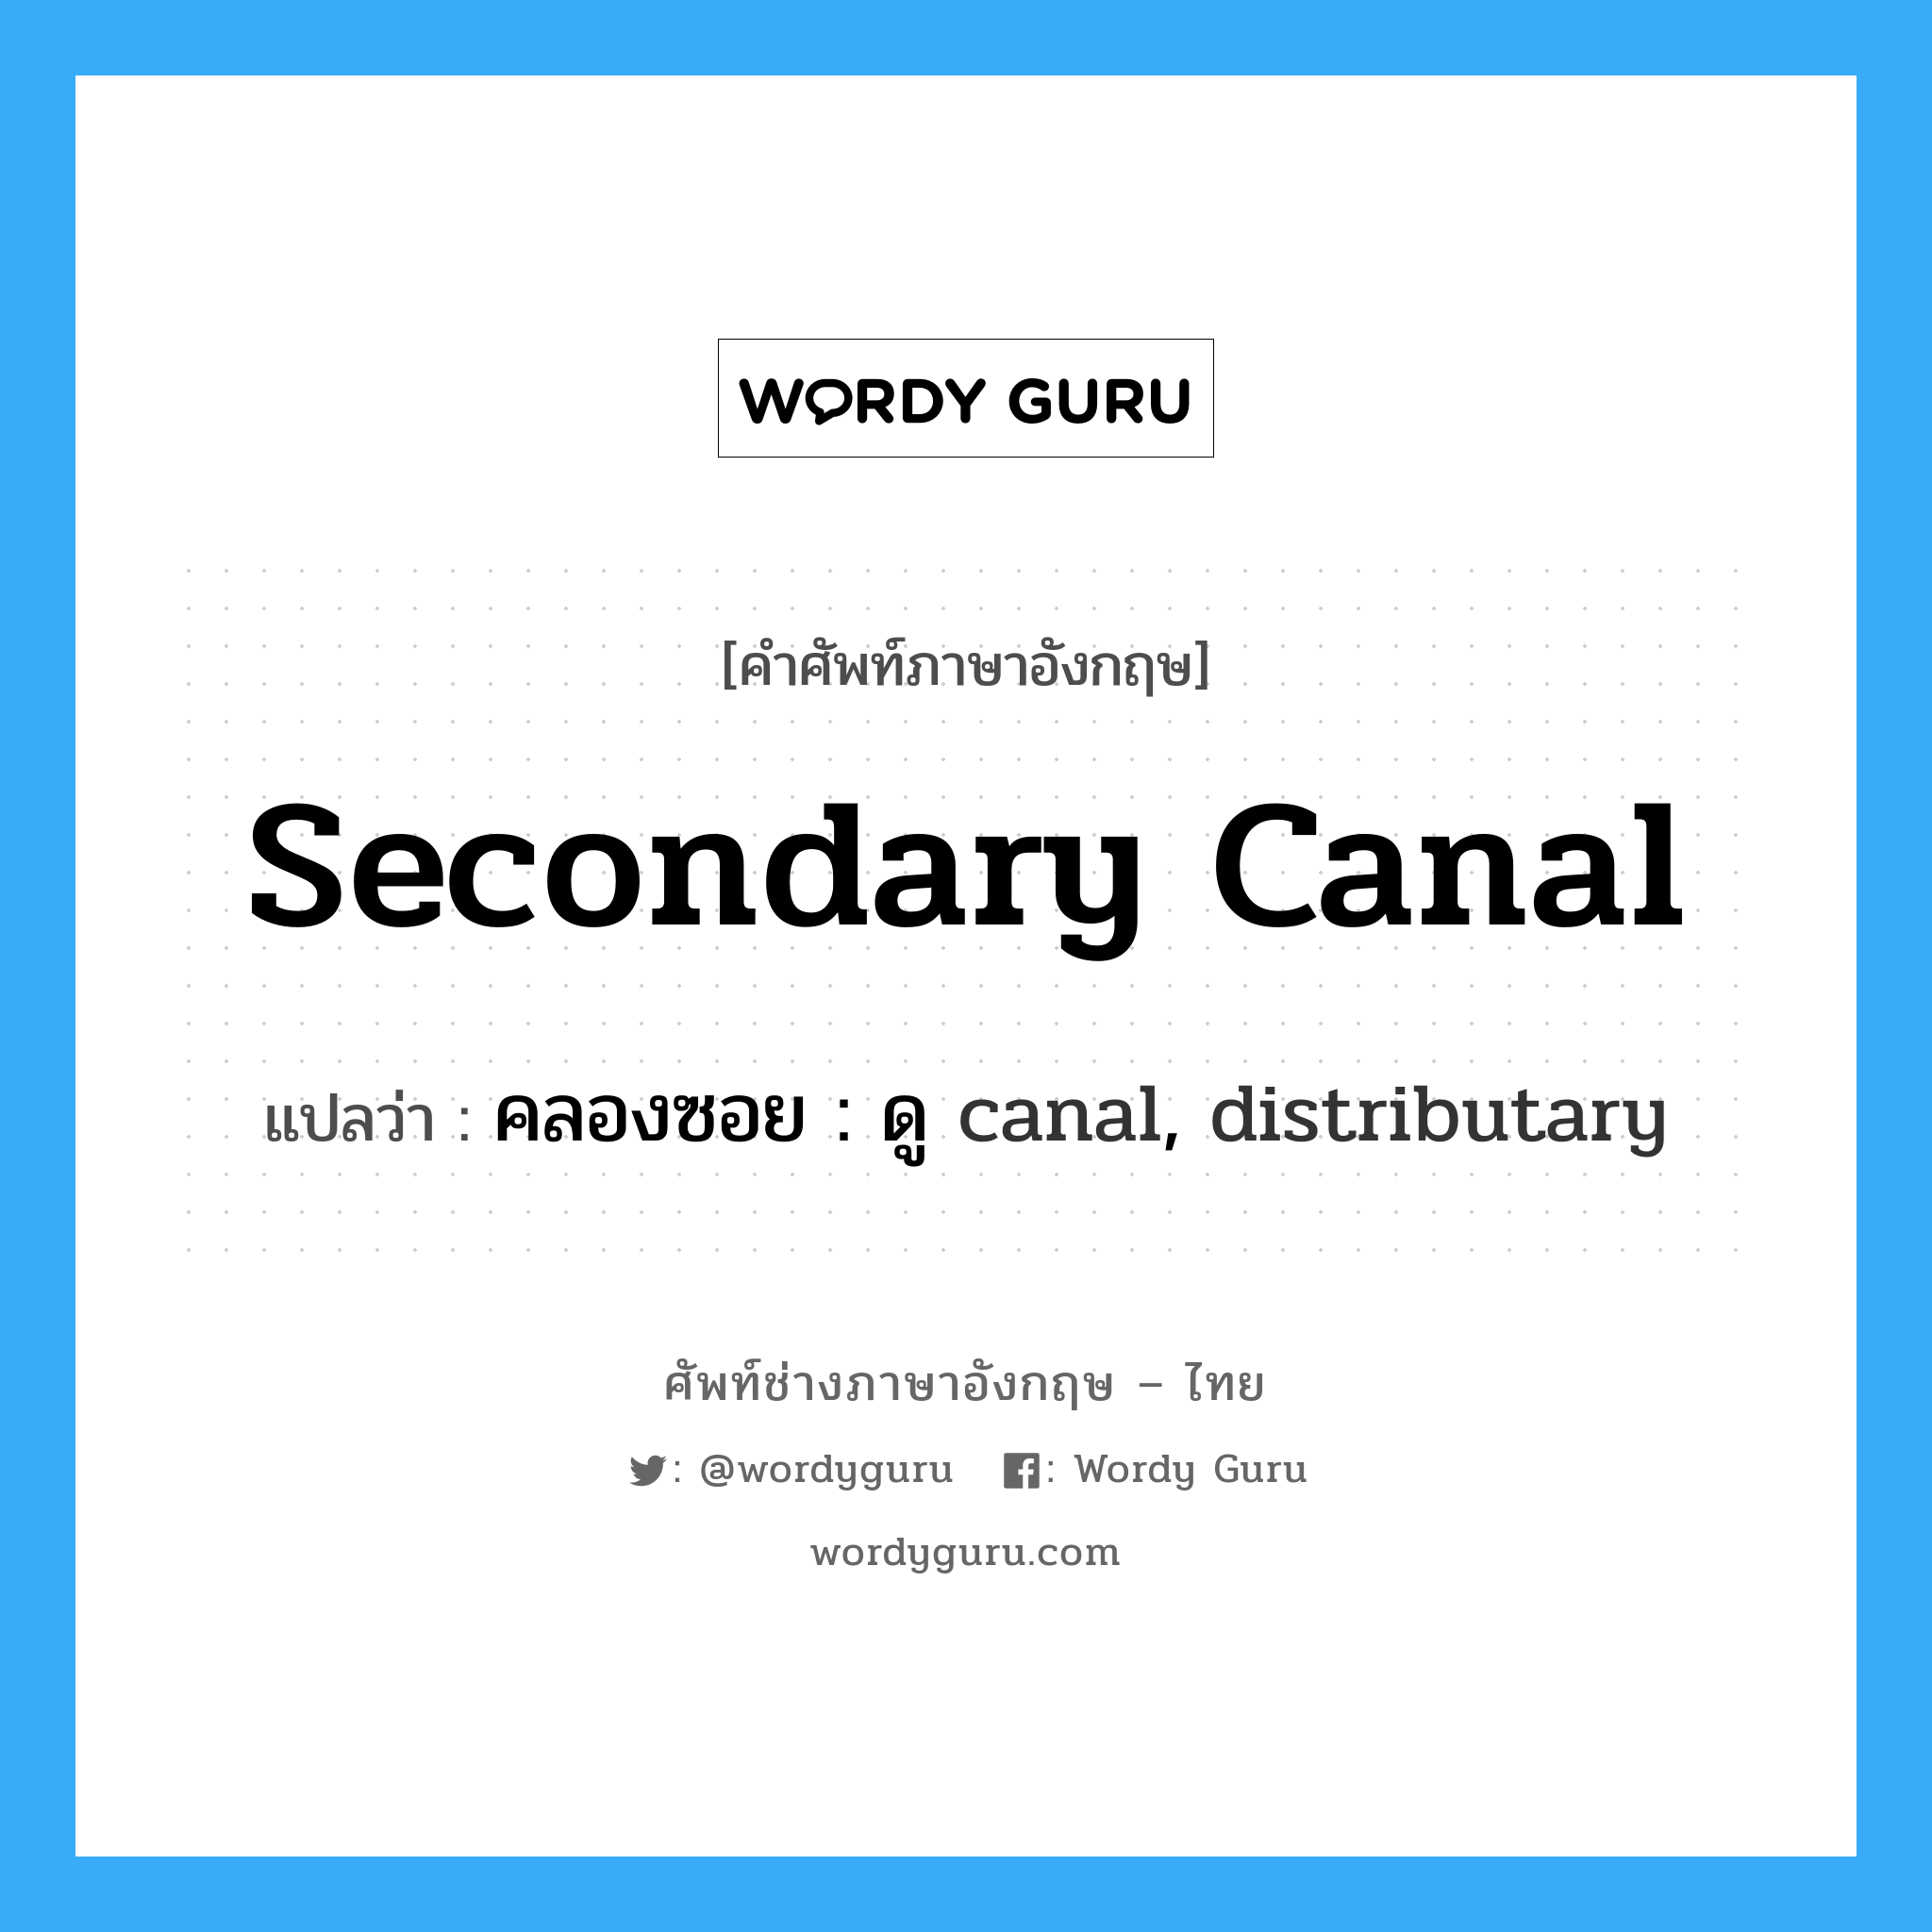 คลองซอย : ดู canal, distributary ภาษาอังกฤษ?, คำศัพท์ช่างภาษาอังกฤษ - ไทย คลองซอย : ดู canal, distributary คำศัพท์ภาษาอังกฤษ คลองซอย : ดู canal, distributary แปลว่า secondary canal